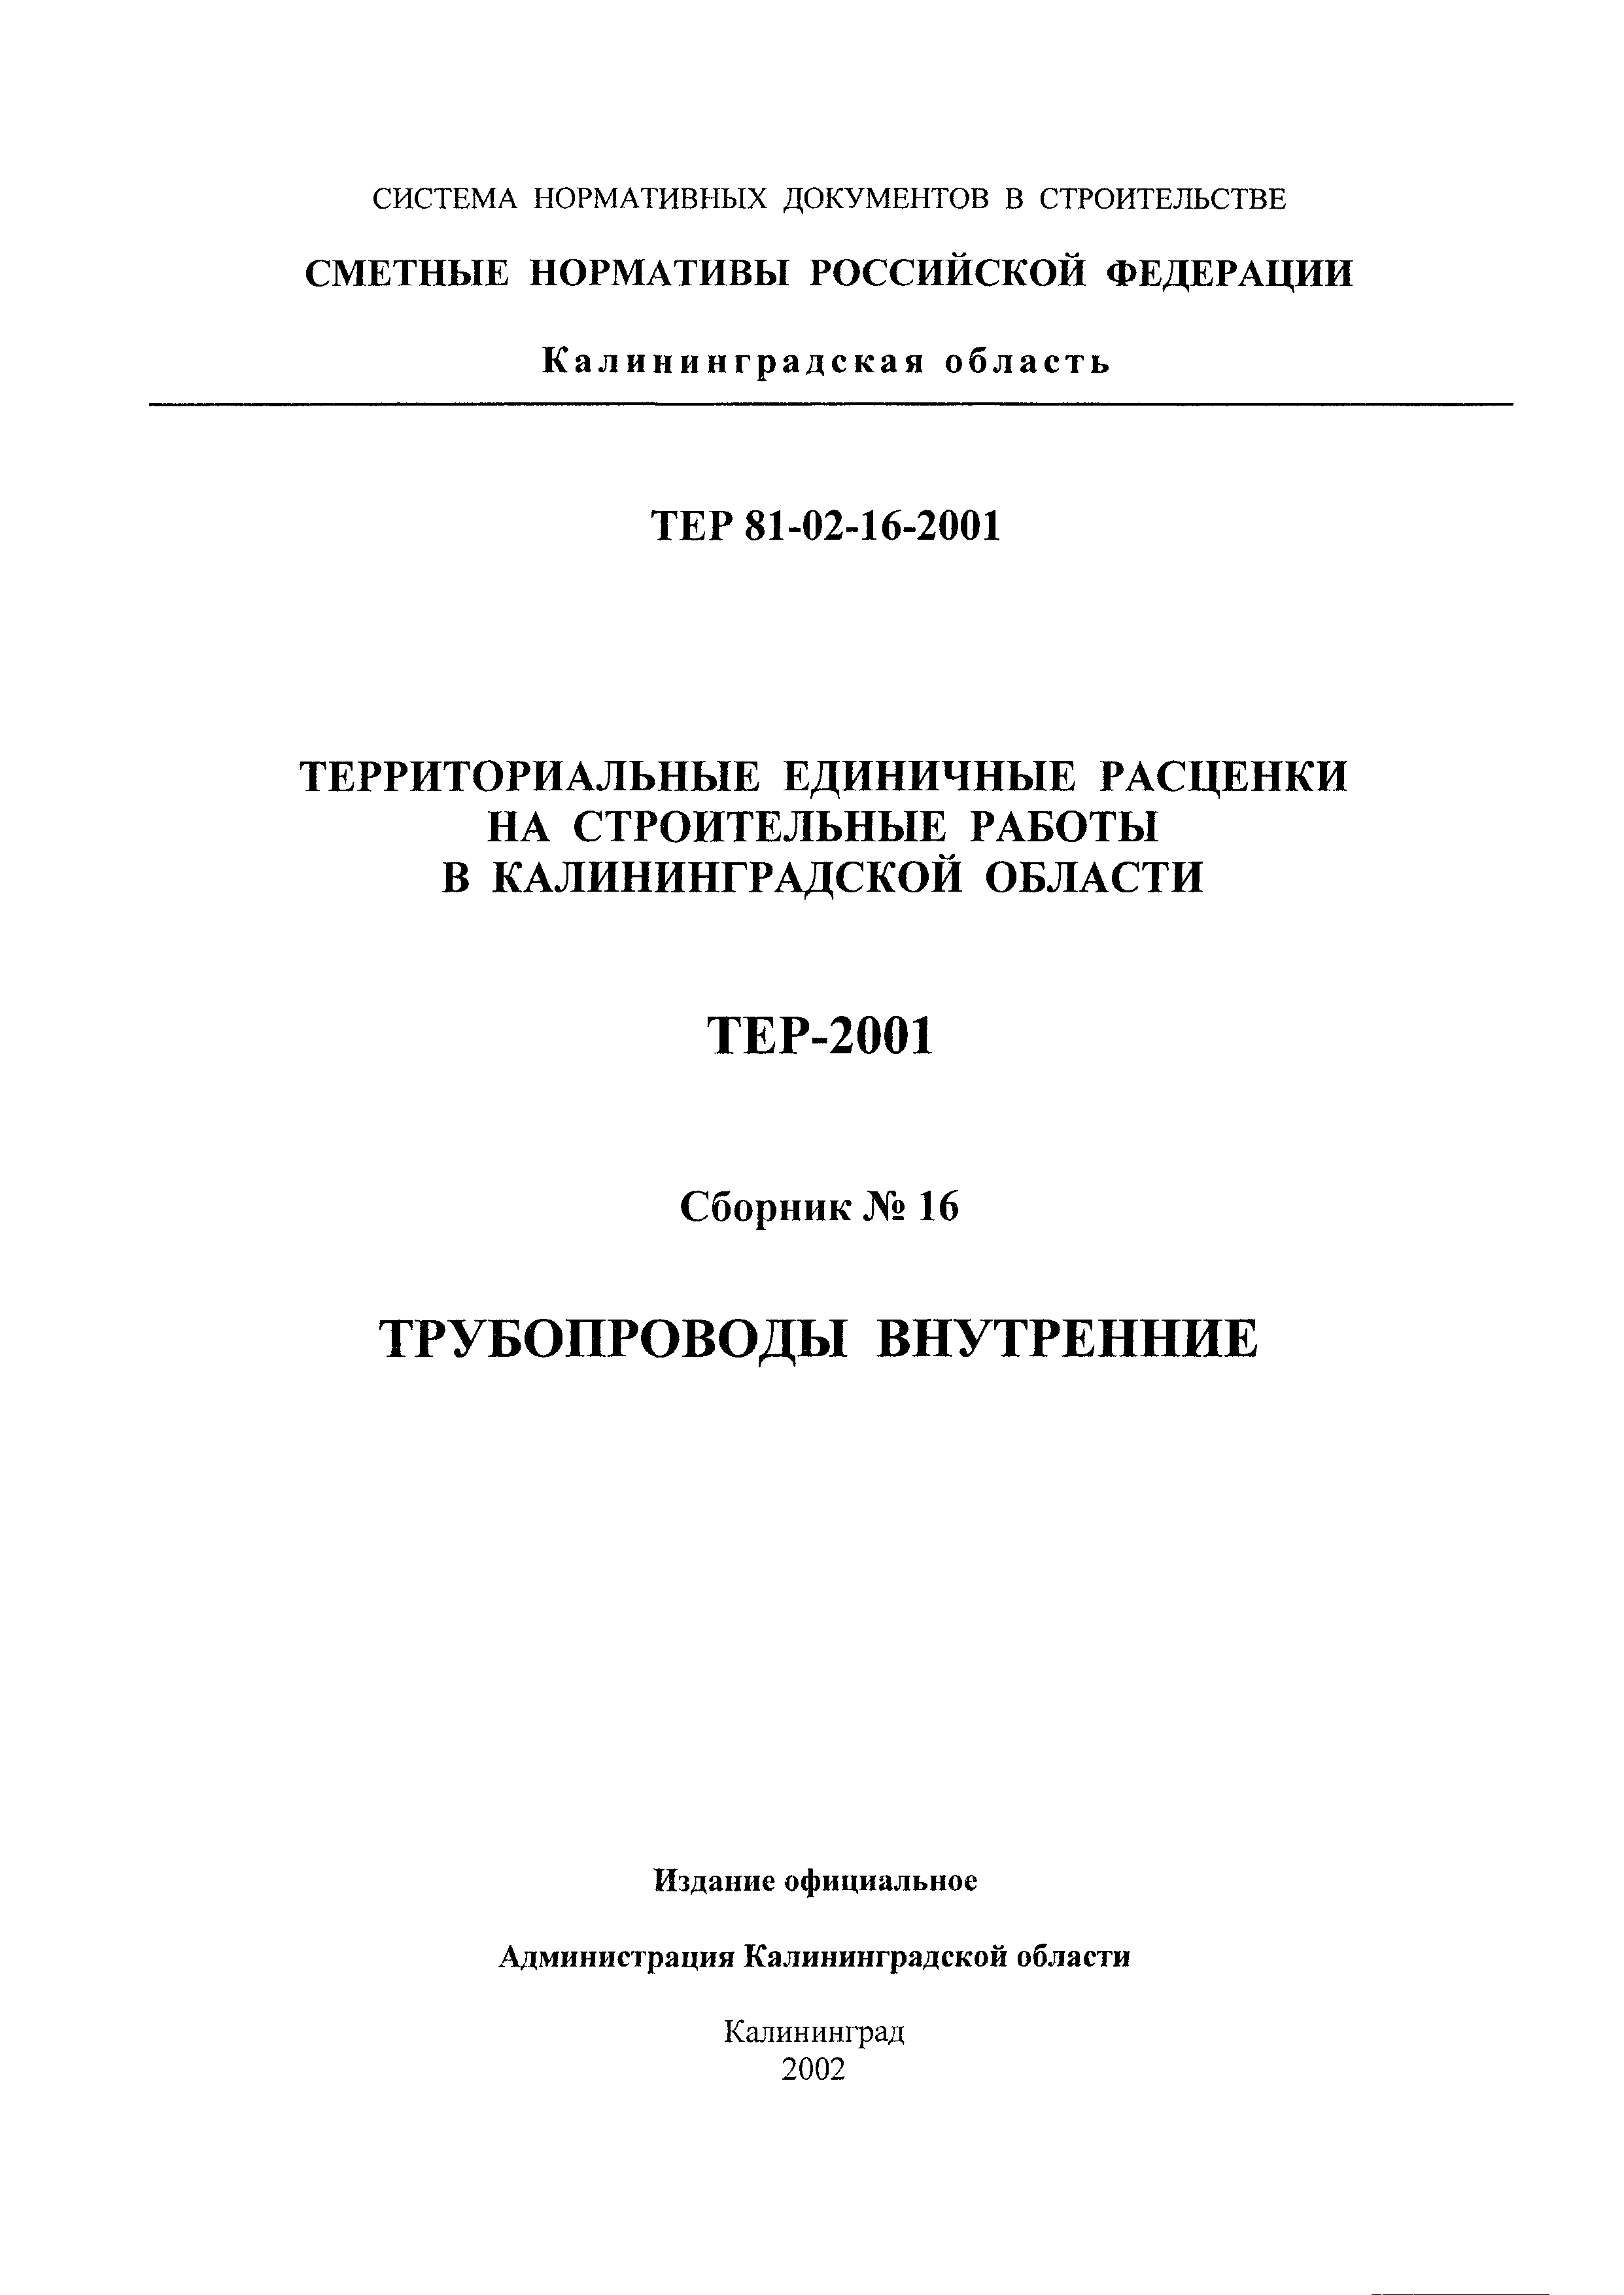 ТЕР Калининградской области 2001-16